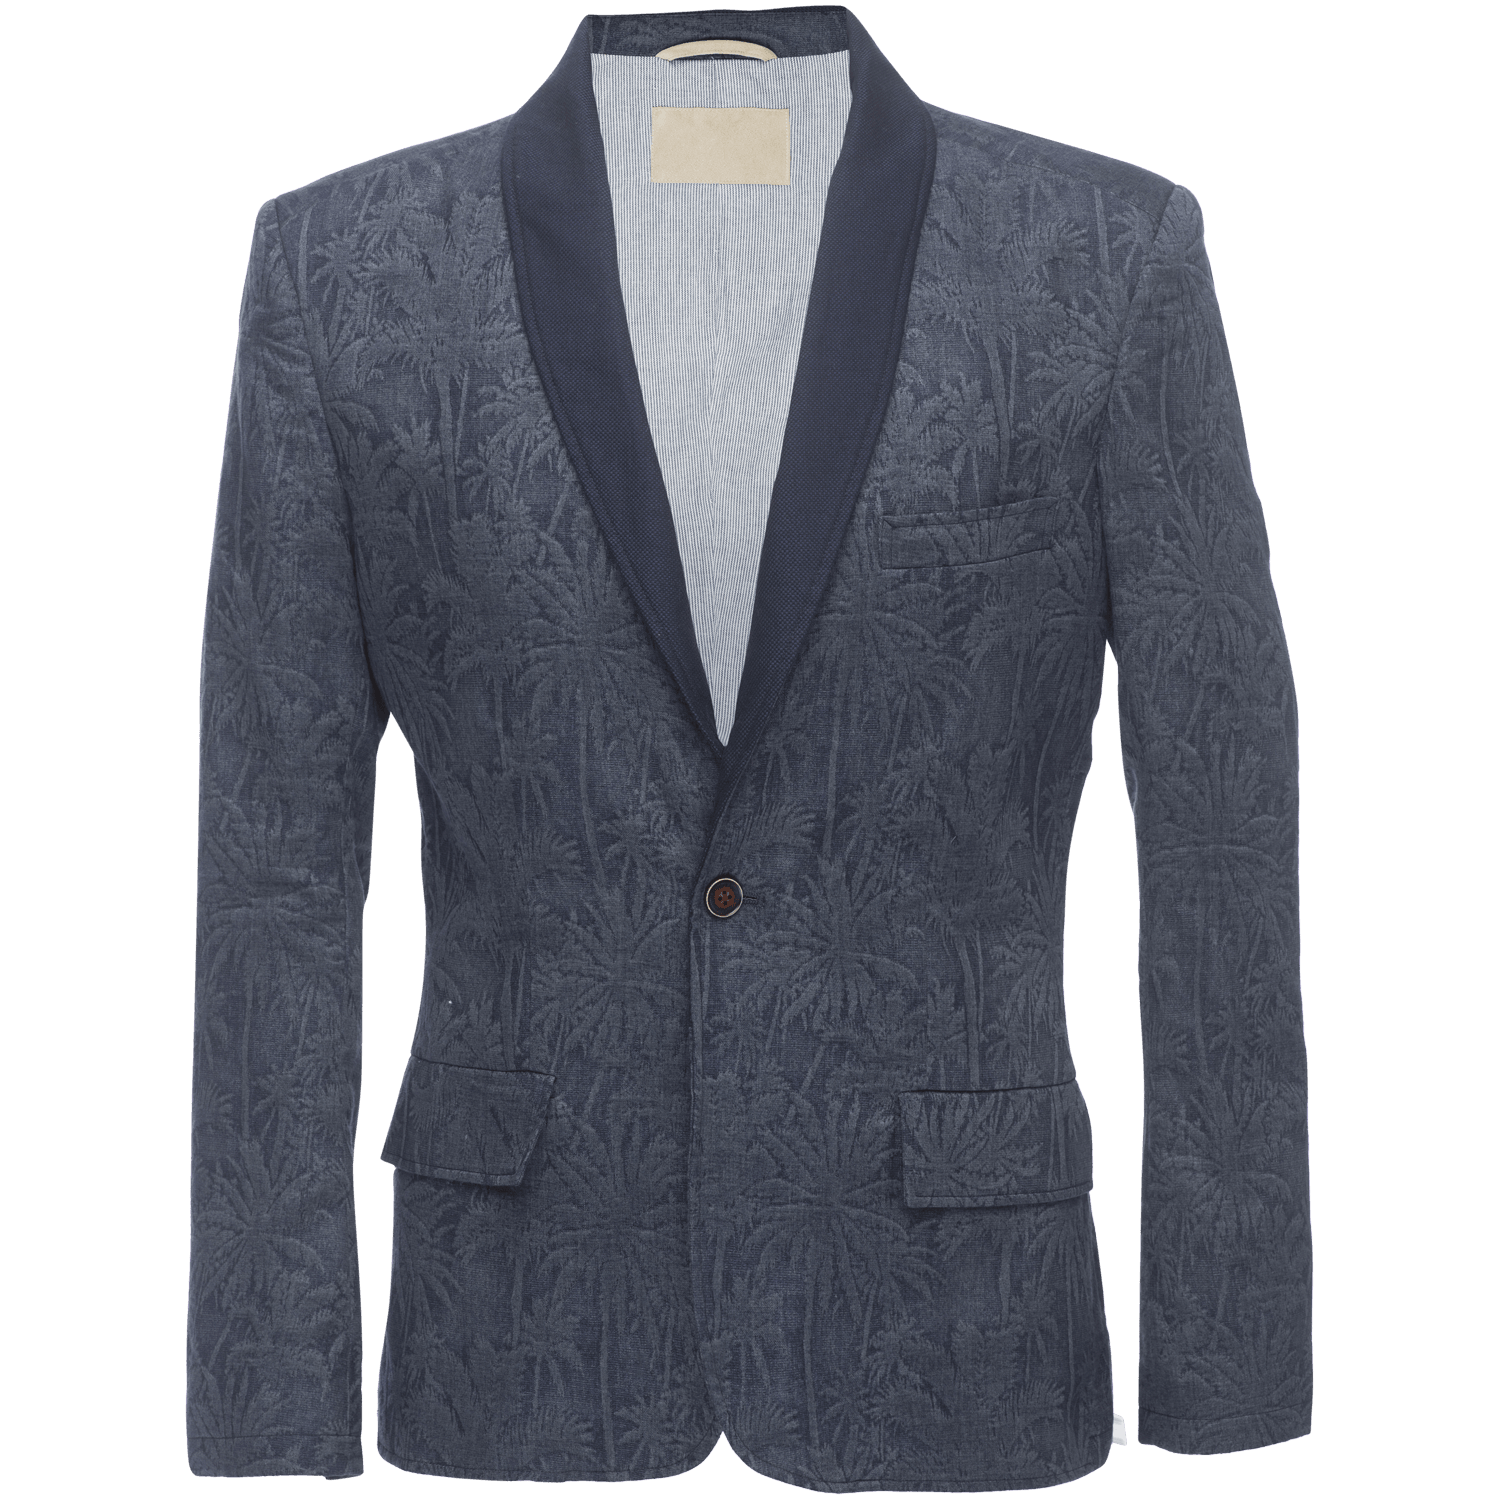 Harrington Jacket in Camo Jacquard Seersucker – Nifty Genius